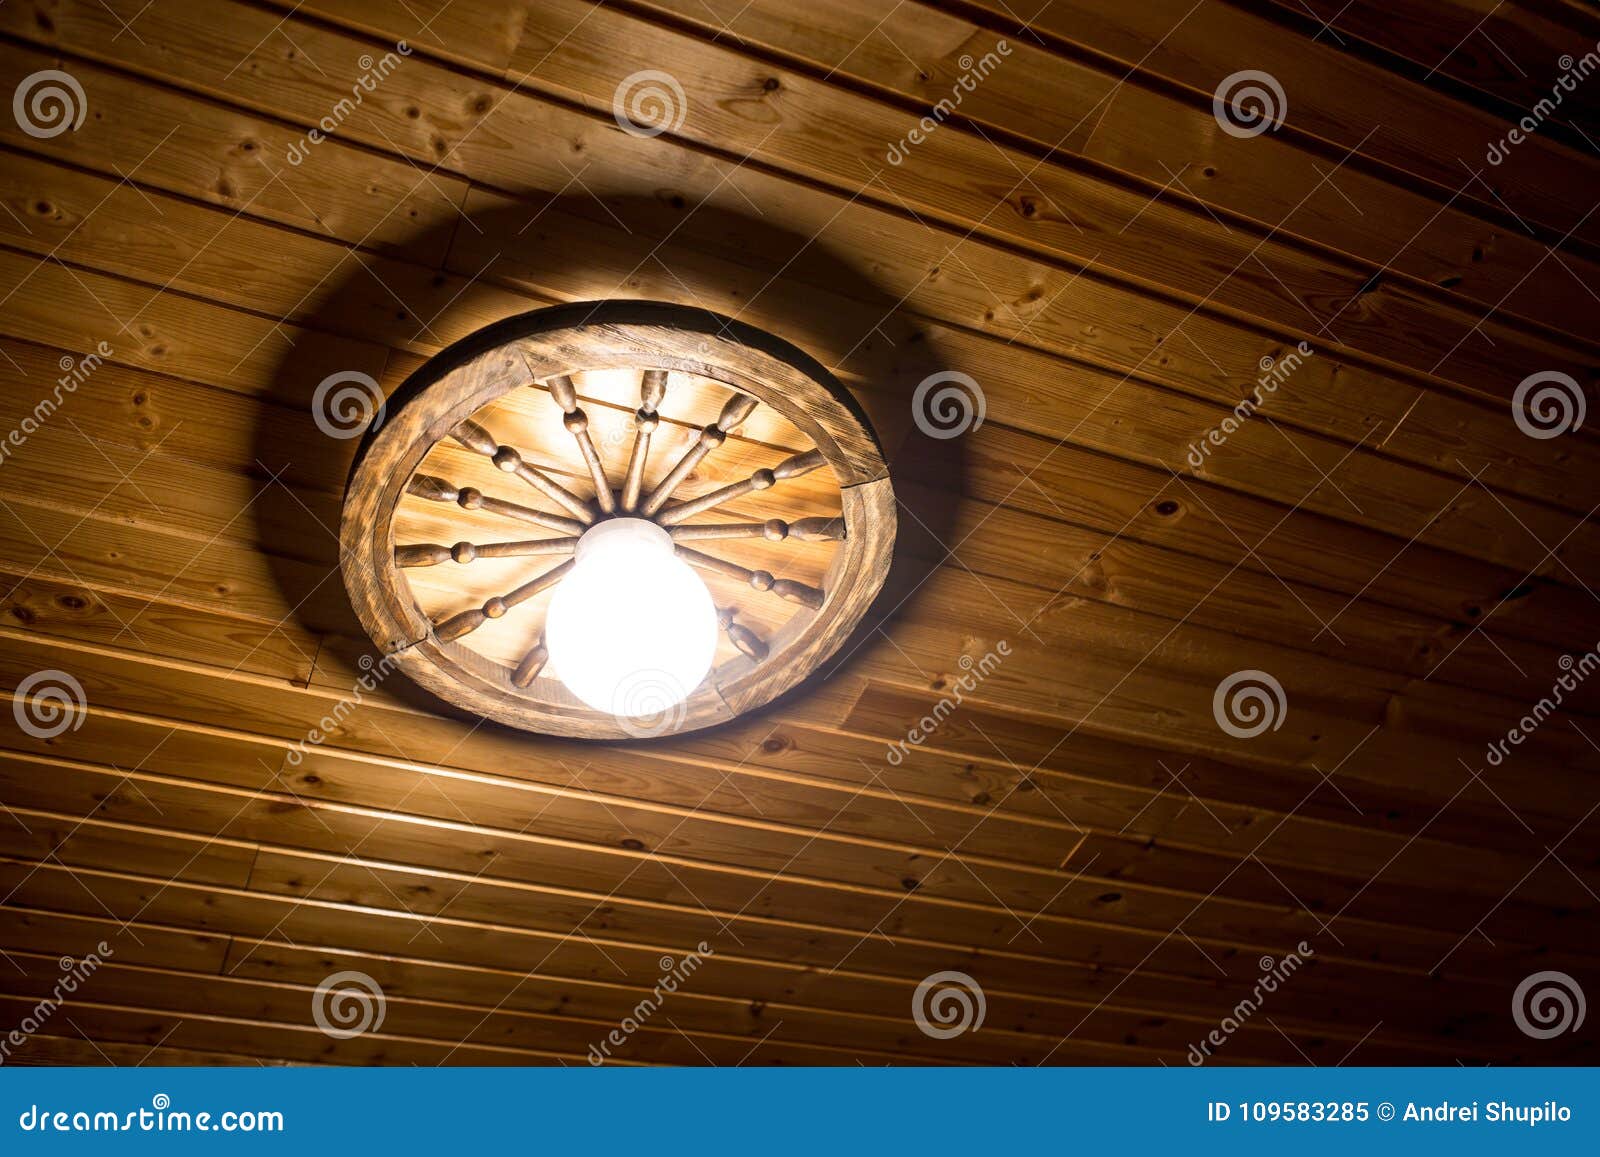 Lampe Sur Un Plafond En Bois Image Stock Image Du Luxe